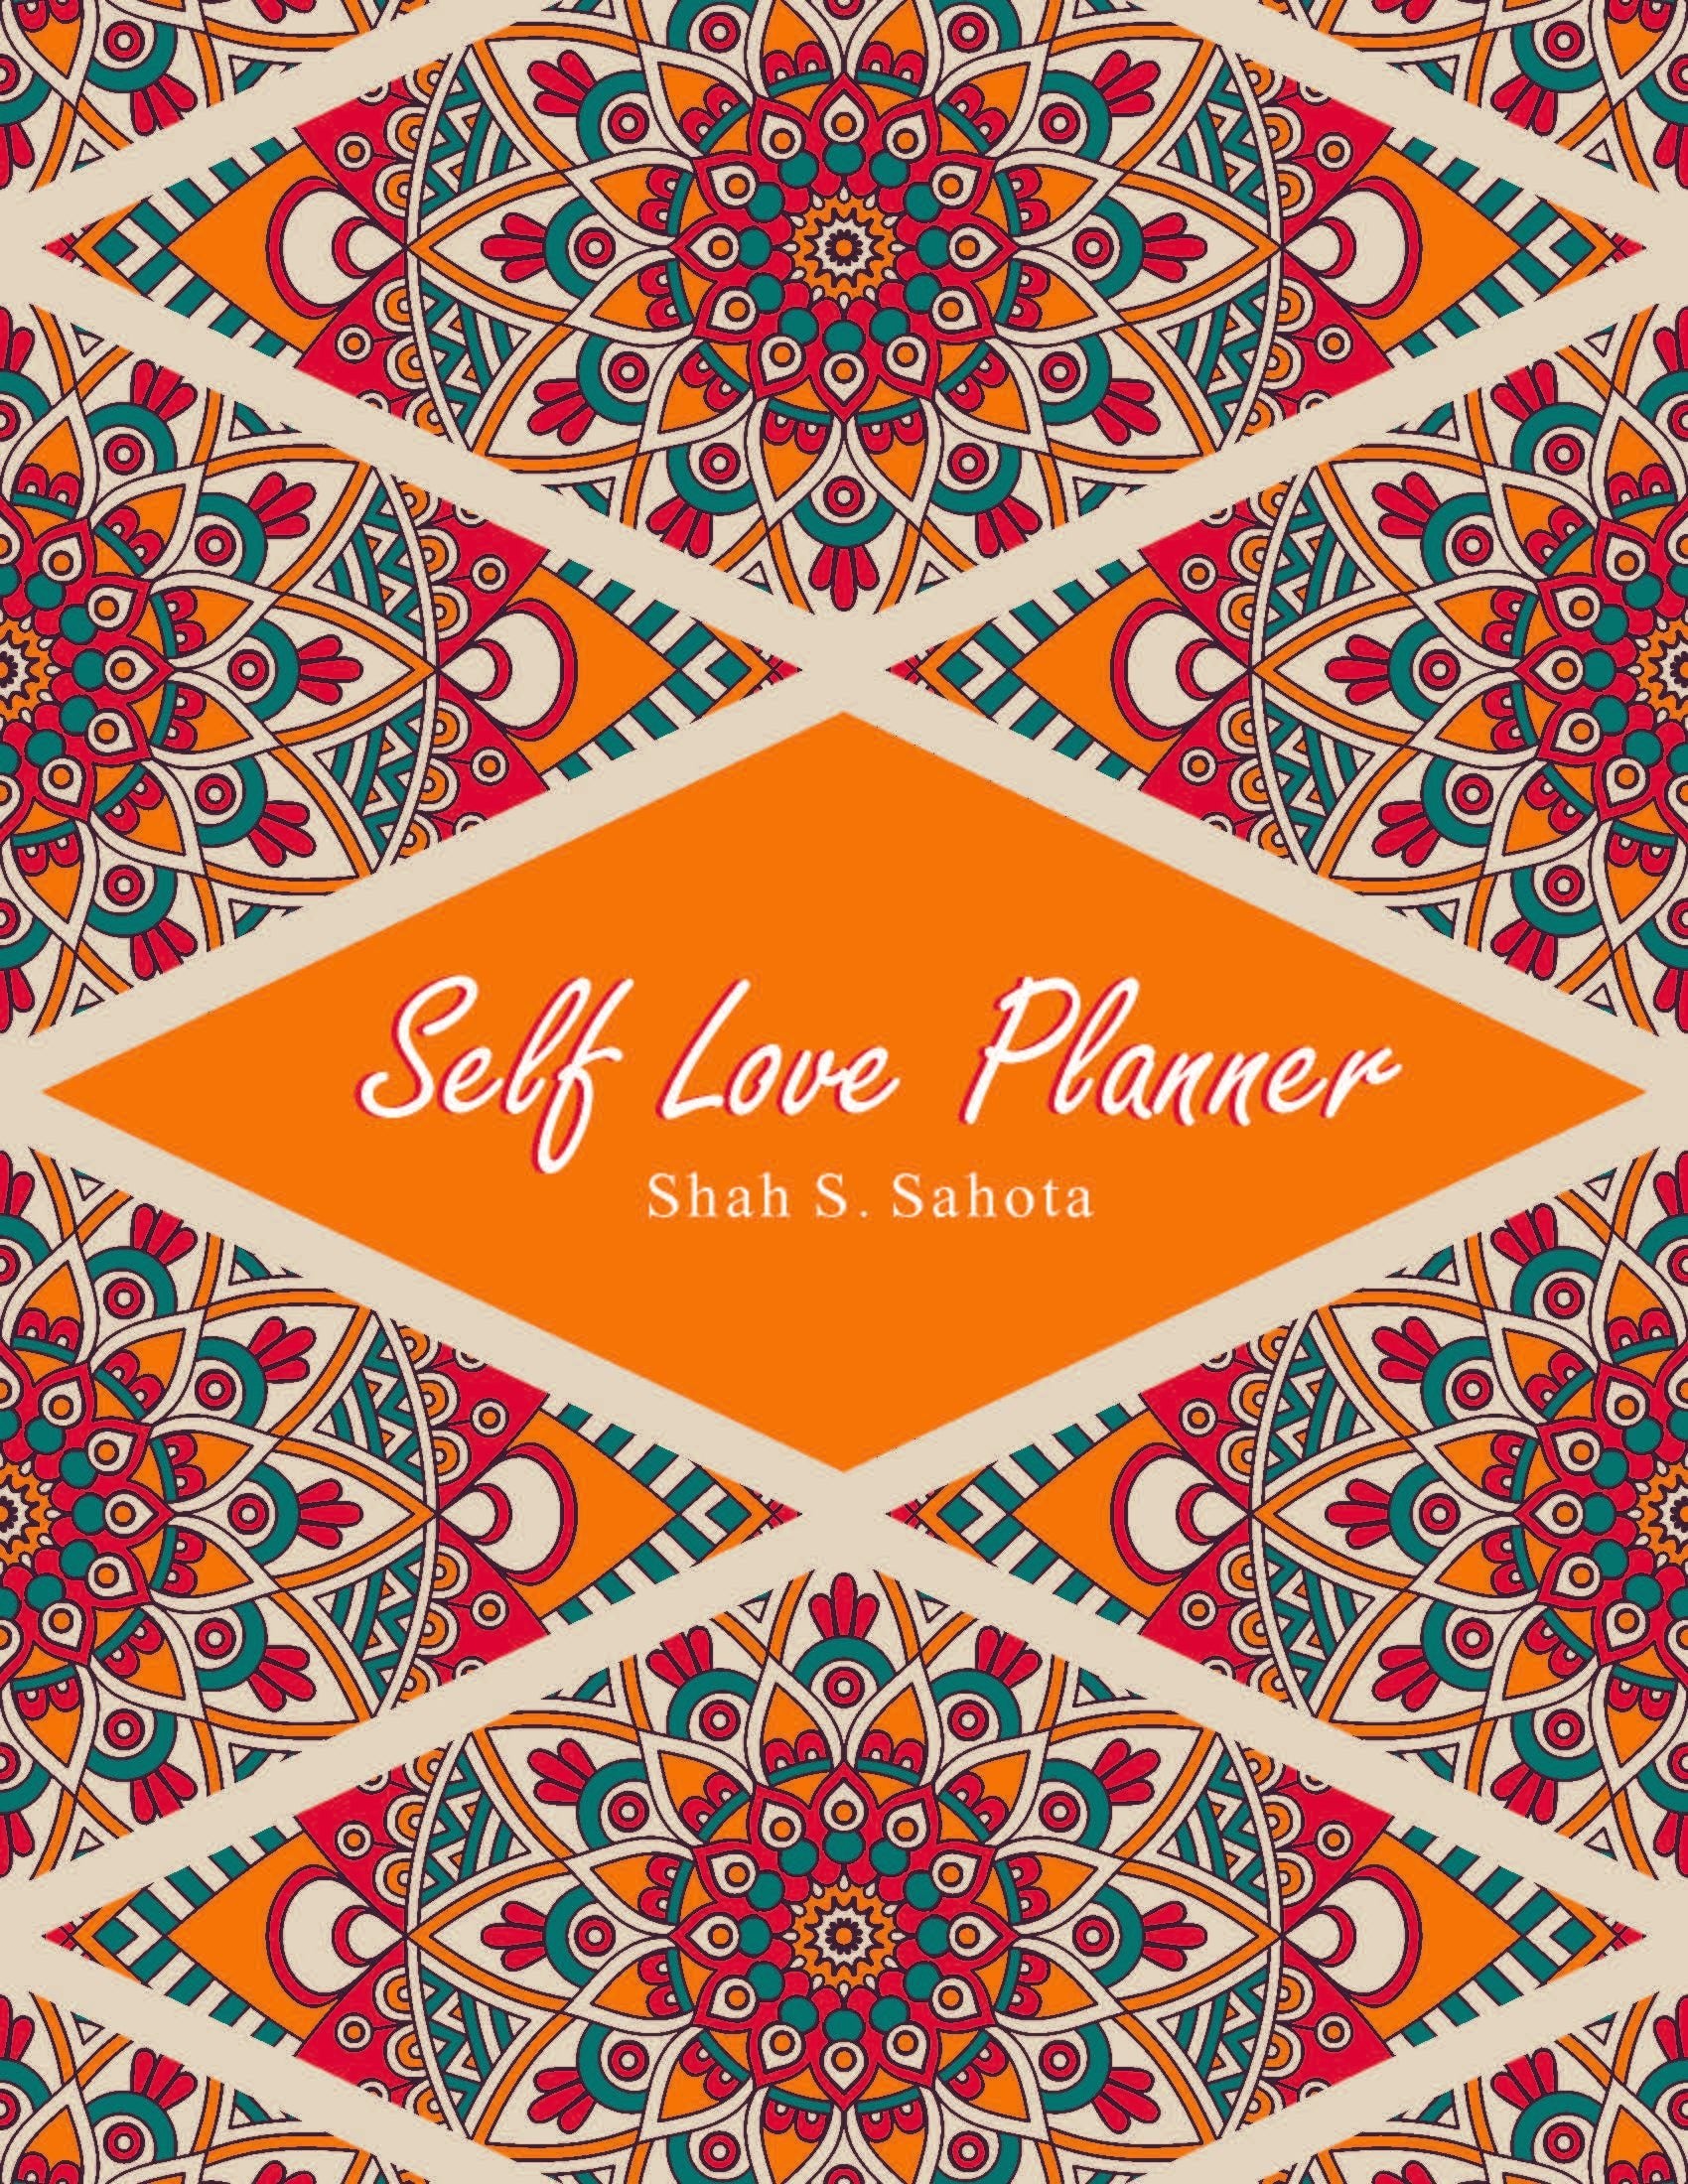 Self Love Planner - Shah S. Sahota